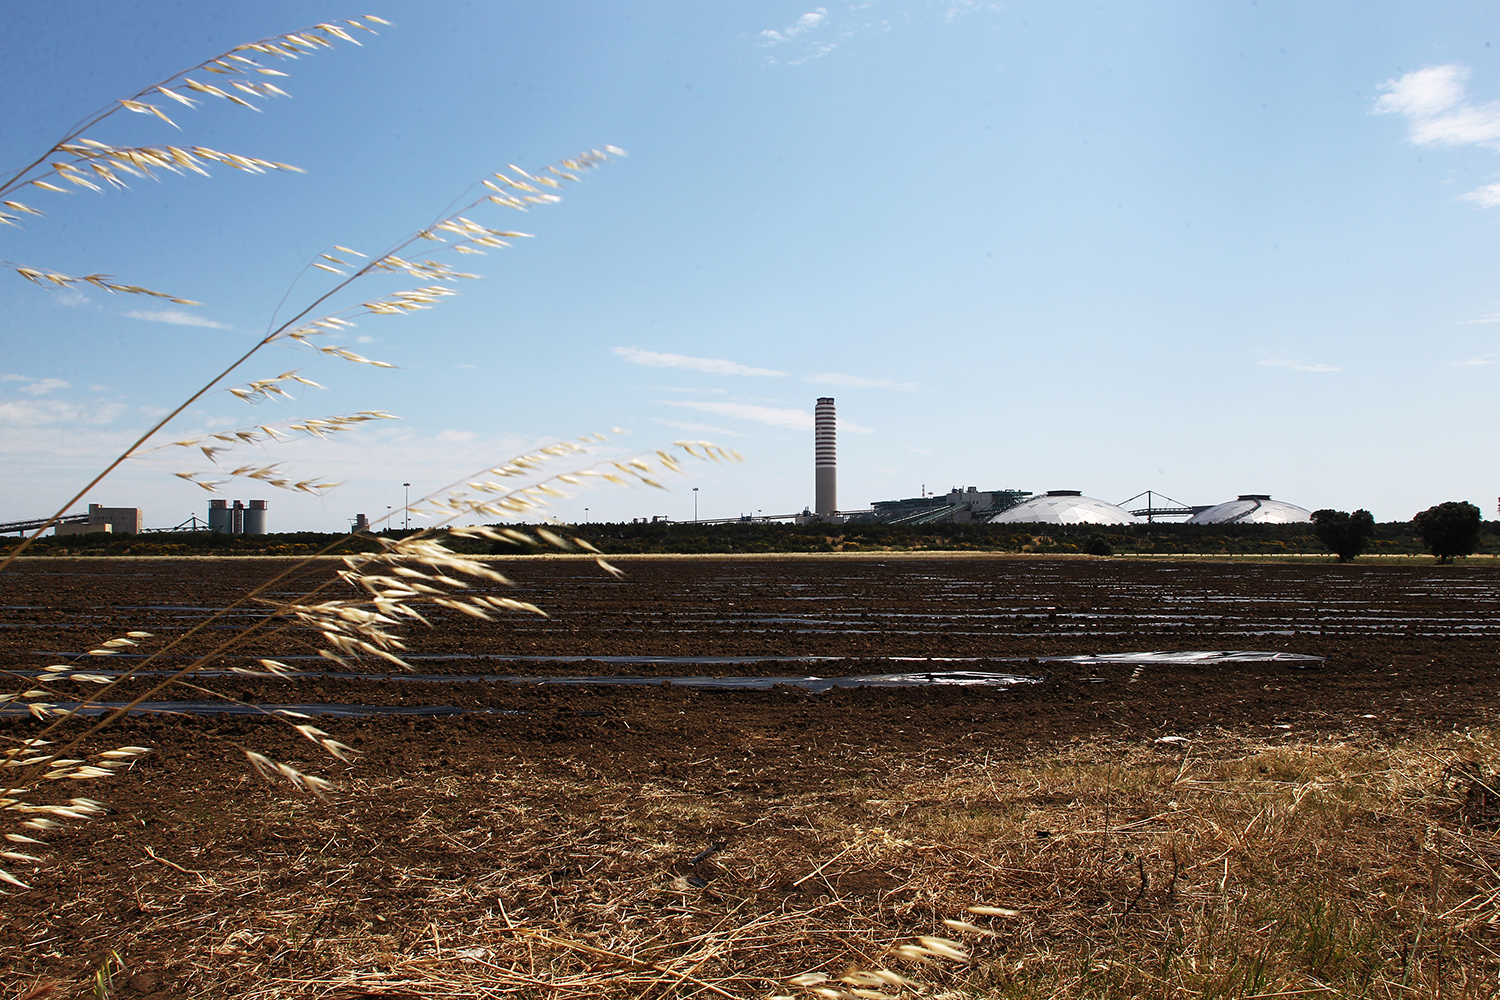  Una veduta della Centrale Enel Federico II, in primo piano un terreno agricolo a ridosso dell’impianto durante la fase di pacciamatura.
 